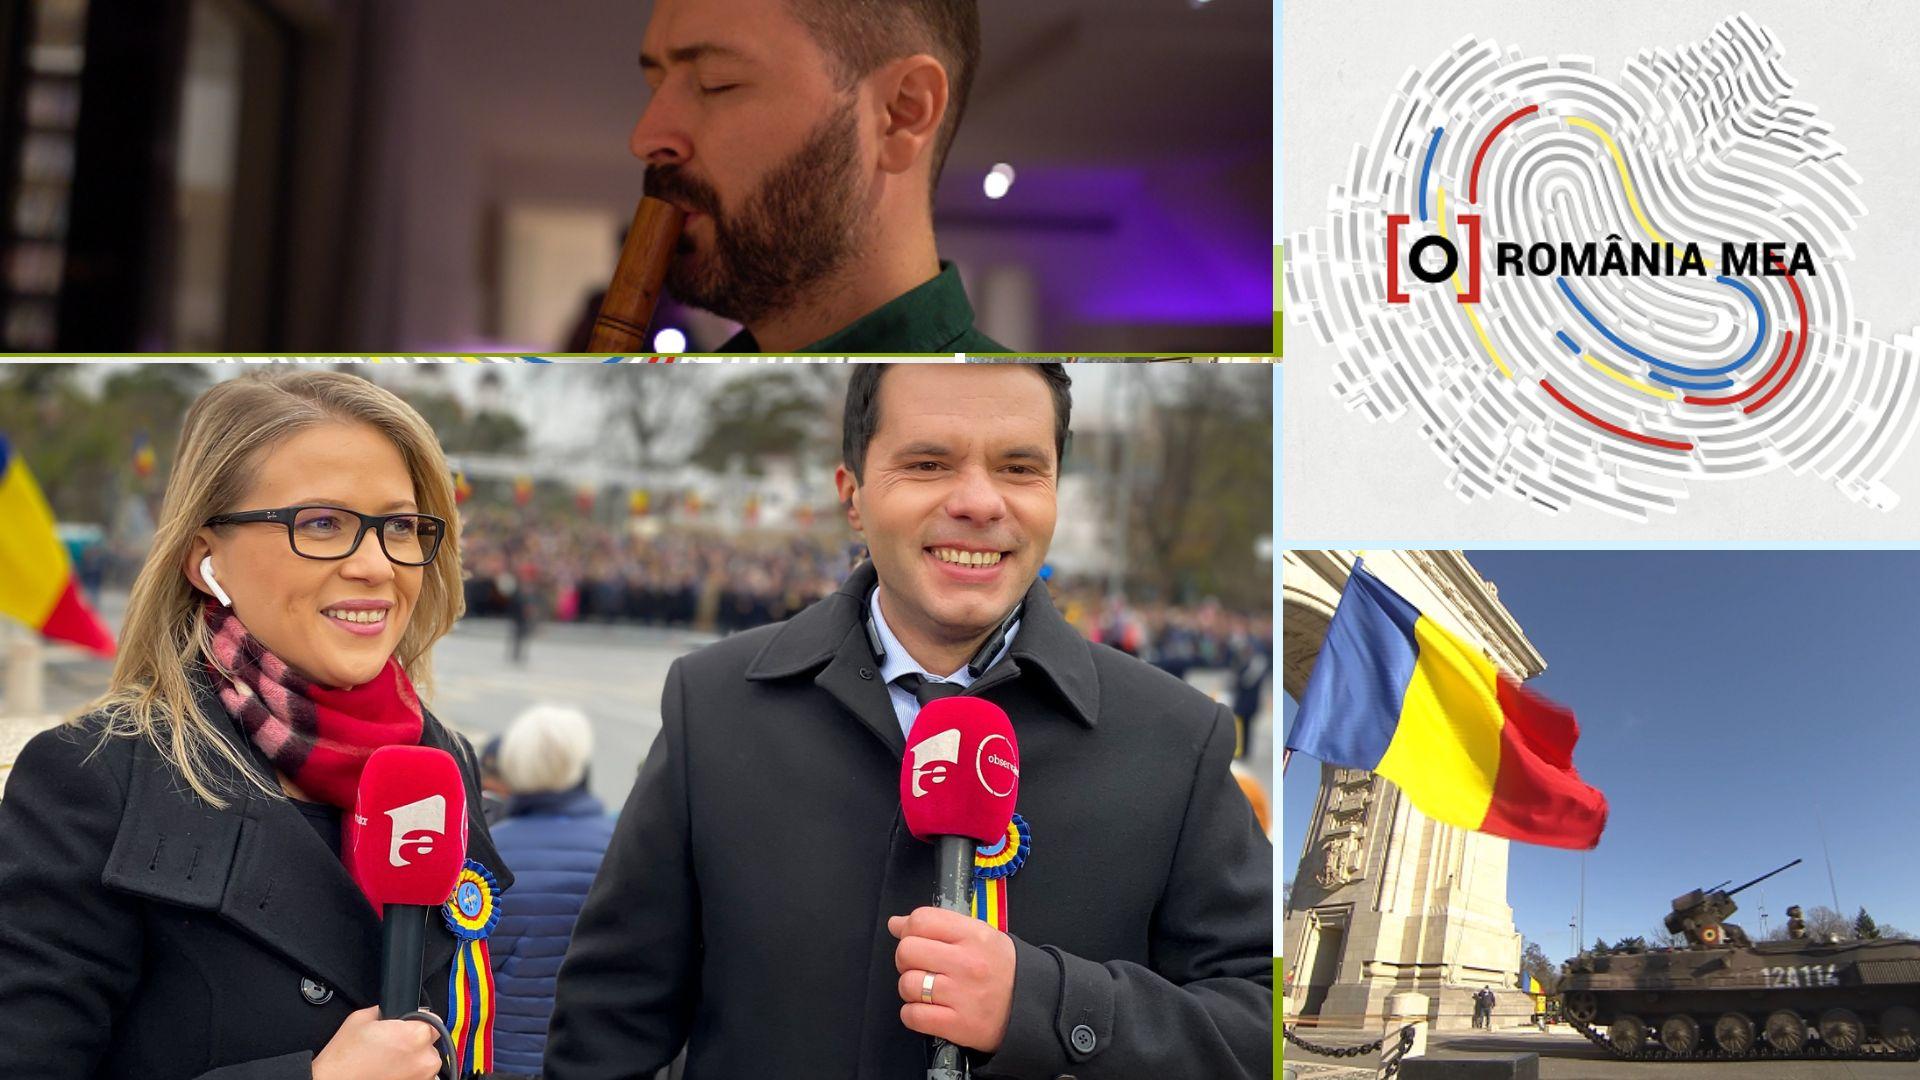 De 1 Decembrie, Observator Antena 1 prezintă România mea - poveștile de succes ale României